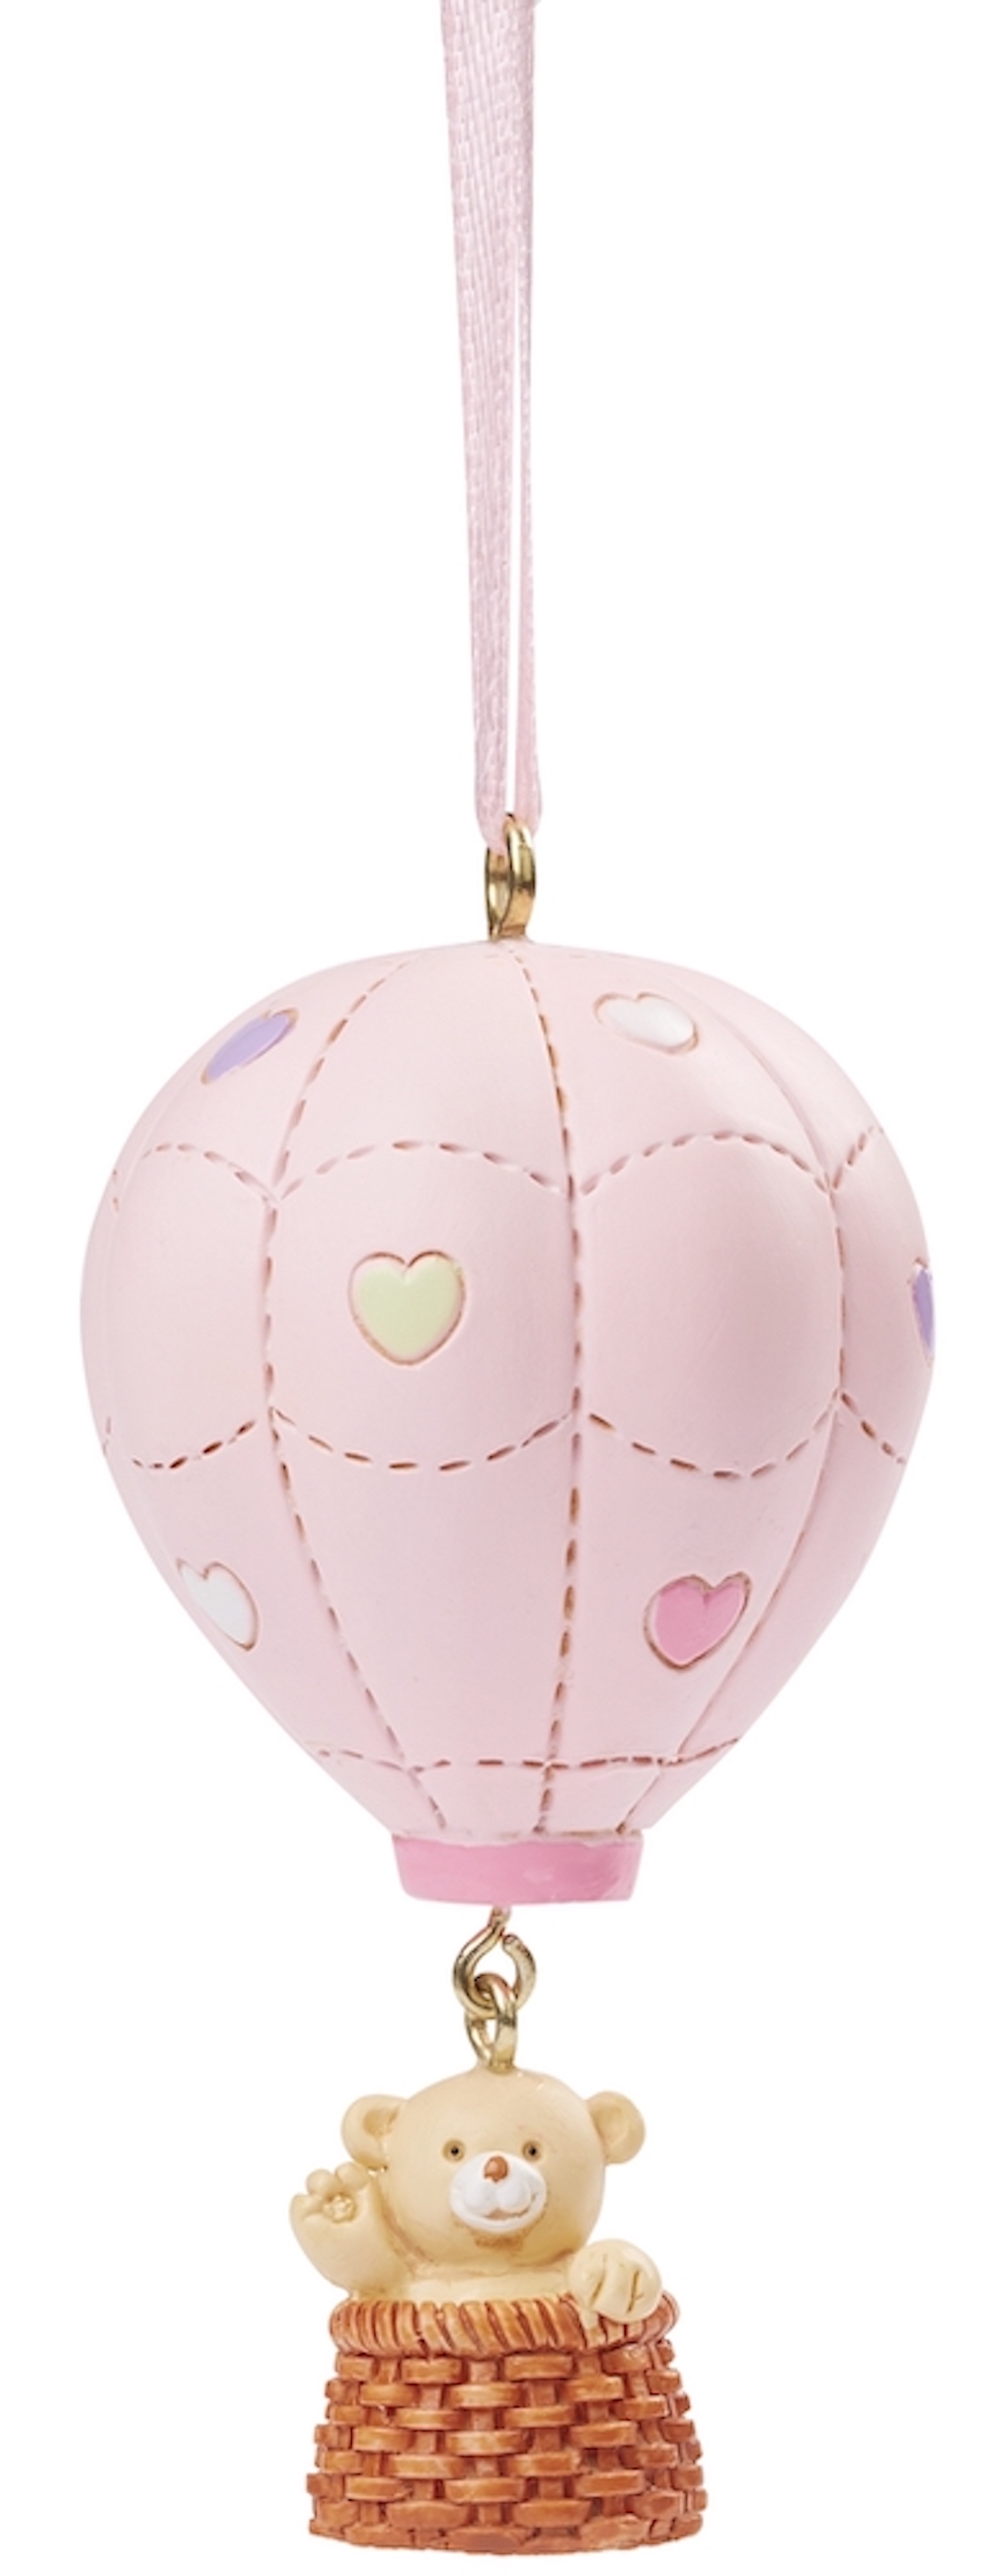 CREApop® Polyresinfigur Heißluftballon Teddybär, 6,5cm